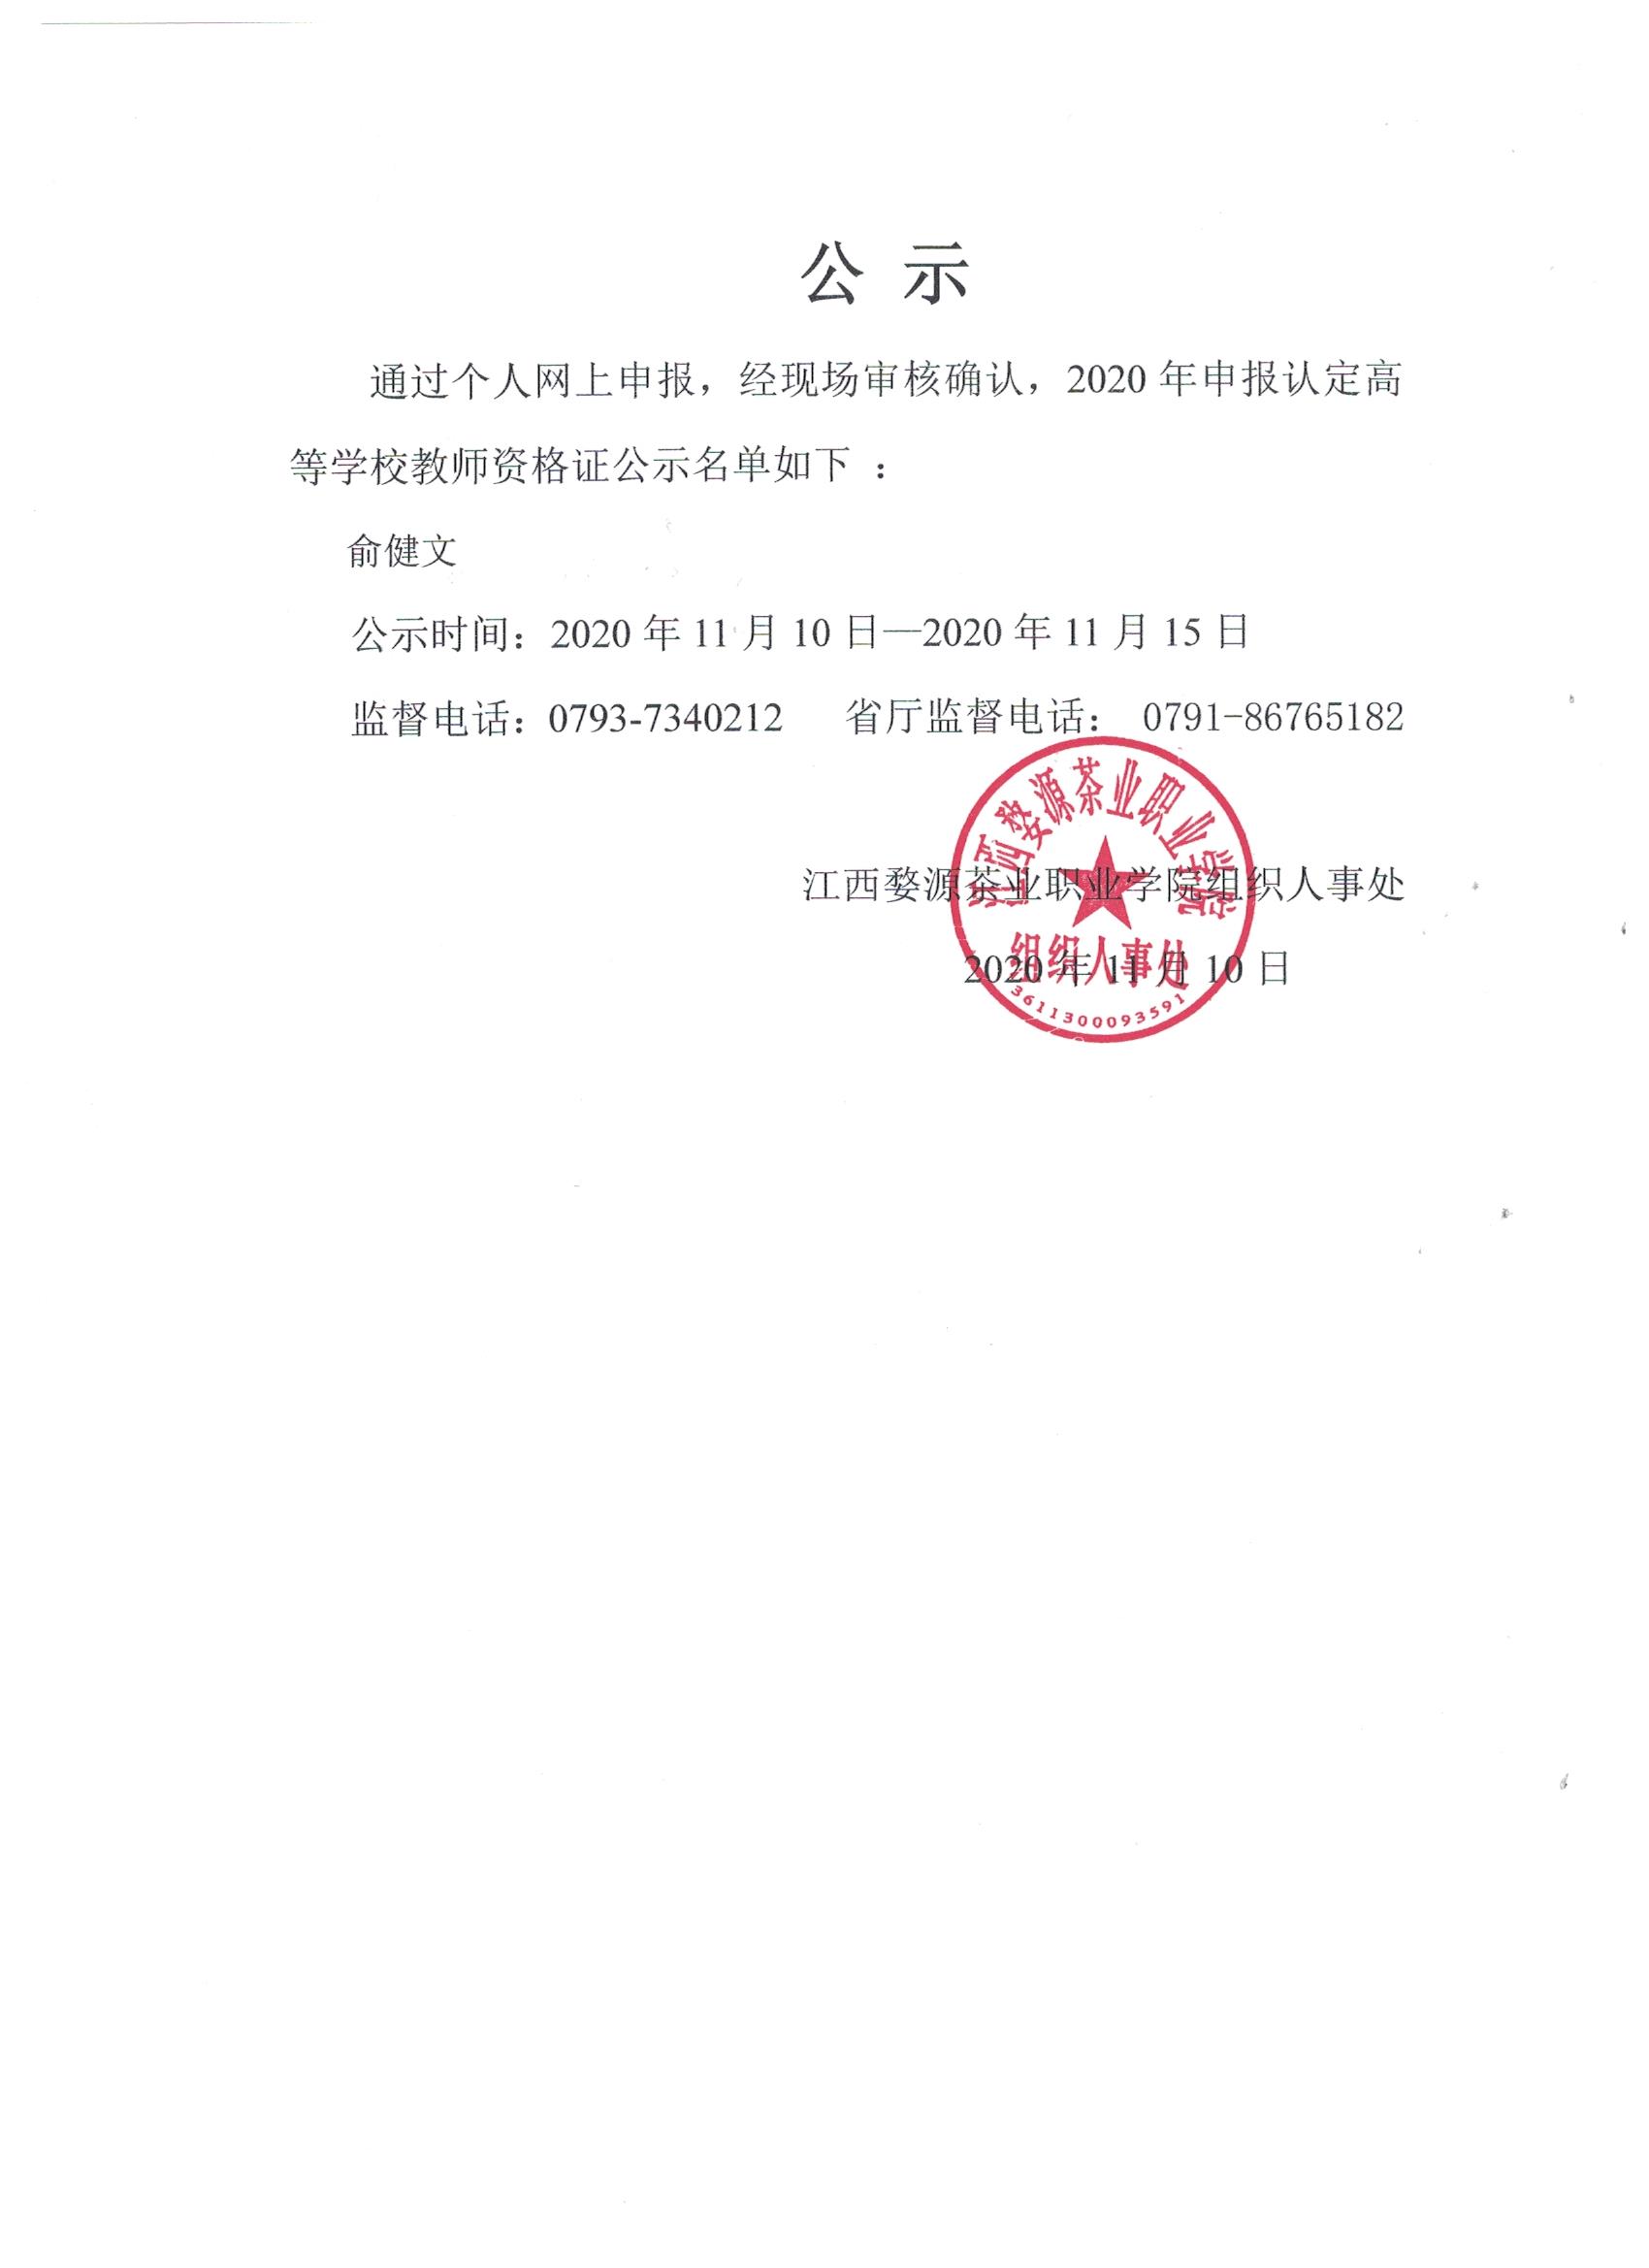 江西婺源茶业职业学院关于2020年秋季教师资格证认定公示